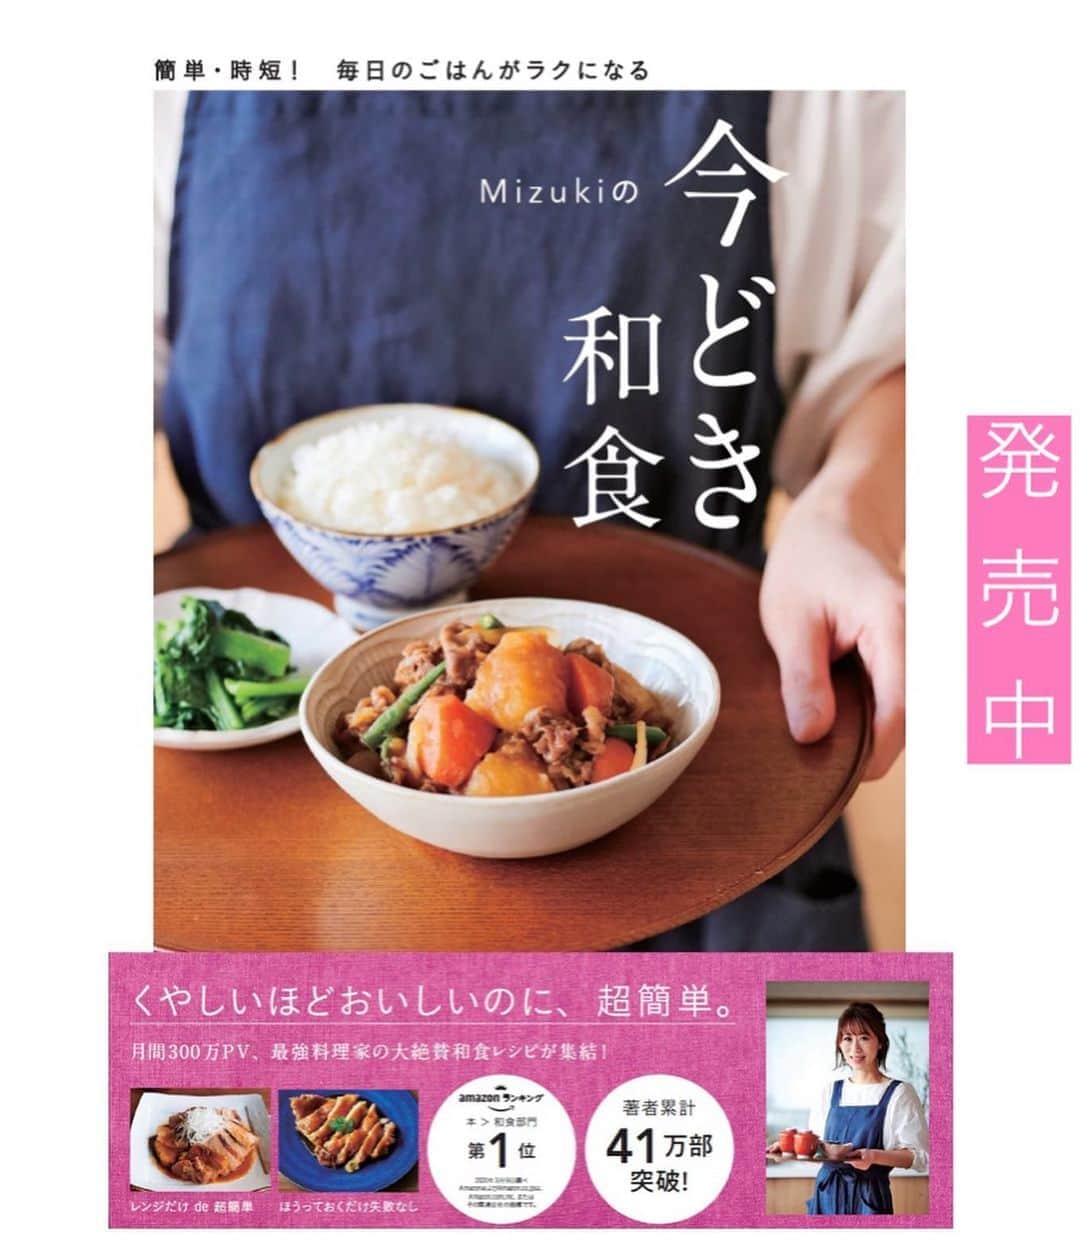 Mizuki【料理ブロガー・簡単レシピ】さんのインスタグラム写真 - (Mizuki【料理ブロガー・簡単レシピ】Instagram)「・﻿ 【レシピ】ーーーーーーーーーーーー﻿ ♡豚肉ときゅうりのごまポン和え♡﻿ ーーーーーーーーーーーーーーーーー﻿ ﻿ ﻿ ﻿ おはようございます(*^^*)﻿ ﻿ 今日は包丁要らずの簡単レシピ！﻿ ［豚肉ときゅうりのごまポン和え］を﻿ ご紹介させていただきます♩﻿ ﻿ カリカリに焼いた豚肉と﻿ 歯触りのよいきゅうりに﻿ ごま風味ポン酢だれが相性抜群♡﻿ 暑い日でもさっぱり食べられるので﻿ よかったらお試し下さいね(*´艸`)﻿ ﻿ ﻿ ﻿ ーーーーーーーーーーーーーーーーーーーー﻿ 【2人分】﻿ 豚こま切れ肉...170g﻿ ●醤油・酒...各小1﻿ 片栗粉...大1.5﻿ きゅうり...2本﻿ サラダ油...小2﻿ ☆ポン酢...大2﻿ ☆ごま・ごま油...各大1﻿ ☆砂糖...小1/3﻿ ﻿ 1.豚肉に●を揉み込み、適当に広げて片栗粉をまぶす。きゅうりはめん棒で叩き、手で一口大に割る。☆は合わせておく。﻿ 2.フライパンにサラダ油を中火で熱し、豚肉を両面カリッとなるまで焼く。﻿ 3.2ときゅうりを和えて器に盛り、☆をかける。﻿ ーーーーーーーーーーーーーーーーーーーー﻿ ﻿ ﻿ ﻿ 《ポイント》﻿ ♦︎豚肉は焼き色が付いてカリッとなるまで焼いて下さい♩﻿ ♦︎きゅうりは手で割ると調味料がからみやすくなります♩﻿ ﻿ ﻿ ﻿ ﻿ ﻿ ﻿ ﻿ ＿＿＿＿＿＿＿＿＿＿＿＿＿＿＿＿＿＿＿﻿ 📕7刷重版しました📕﻿ 簡単・時短！ 毎日のごはんがラクになる﻿ ✨🦋 【 #Mizukiの今どき和食 】🦋✨﻿ ＿＿＿＿＿＿＿＿＿＿＿＿＿＿＿＿＿＿＿﻿ なるべく少ない材料で﻿ 手間も時間も省きながら﻿ 簡単にできるおいしい和食レシピ♩﻿ 簡単に失敗なくマスターできる一冊で﻿ もっと気軽に、カジュアルに﻿ 和食を楽しんで下さいね(*^^*)﻿ ＿＿＿＿＿＿＿＿＿＿＿＿＿＿＿＿＿＿＿﻿ ﻿ ﻿ ﻿ ＿＿＿＿＿＿＿＿＿＿＿＿＿＿＿＿＿＿＿﻿ 🎀6刷重版しました🎀﻿ 混ぜて焼くだけ。はじめてでも失敗しない！﻿ 【#ホットケーキミックスのお菓子 】﻿ ﻿ 一冊まるっとホケミスイーツ♩﻿ 普段のおやつから﻿ 特別な日にも使えるレシピを﻿ この一冊に詰め込みました(*^^*)﻿ ホットケーキミックスを使えば﻿ 簡単に本格的なお菓子が作れますよ♡﻿ ＿＿＿＿＿＿＿＿＿＿＿＿＿＿＿＿＿﻿ ﻿ ﻿ ﻿ ﻿ ￣￣￣￣￣￣￣￣￣￣￣￣￣￣￣￣￣￣﻿ レシピを作って下さった際や﻿ レシピ本についてのご投稿には﻿ タグ付け( @mizuki_31cafe )して﻿ お知らせいただけると嬉しいです😊💕﻿ ＿＿＿＿＿＿＿＿＿＿＿＿＿＿＿＿＿＿﻿ ﻿ ﻿ ﻿ ﻿ ﻿ #豚こま#きゅうり#ポン酢#カリカリ豚﻿ #Mizuki#簡単レシピ#時短レシピ#節約レシピ#料理#レシピ#料理#レシピ#フーディーテーブル#マカロニメイト#おうちごはん#デリスタグラマー#料理好きな人と繋がりたい#食べ物#料理記録#おうちごはんlover#写真好きな人と繋がりたい#foodpic#cooking#recipe#lin_stagrammer#foodporn#yummy#豚肉ときゅうりのごまポン和えm」8月16日 7時16分 - mizuki_31cafe